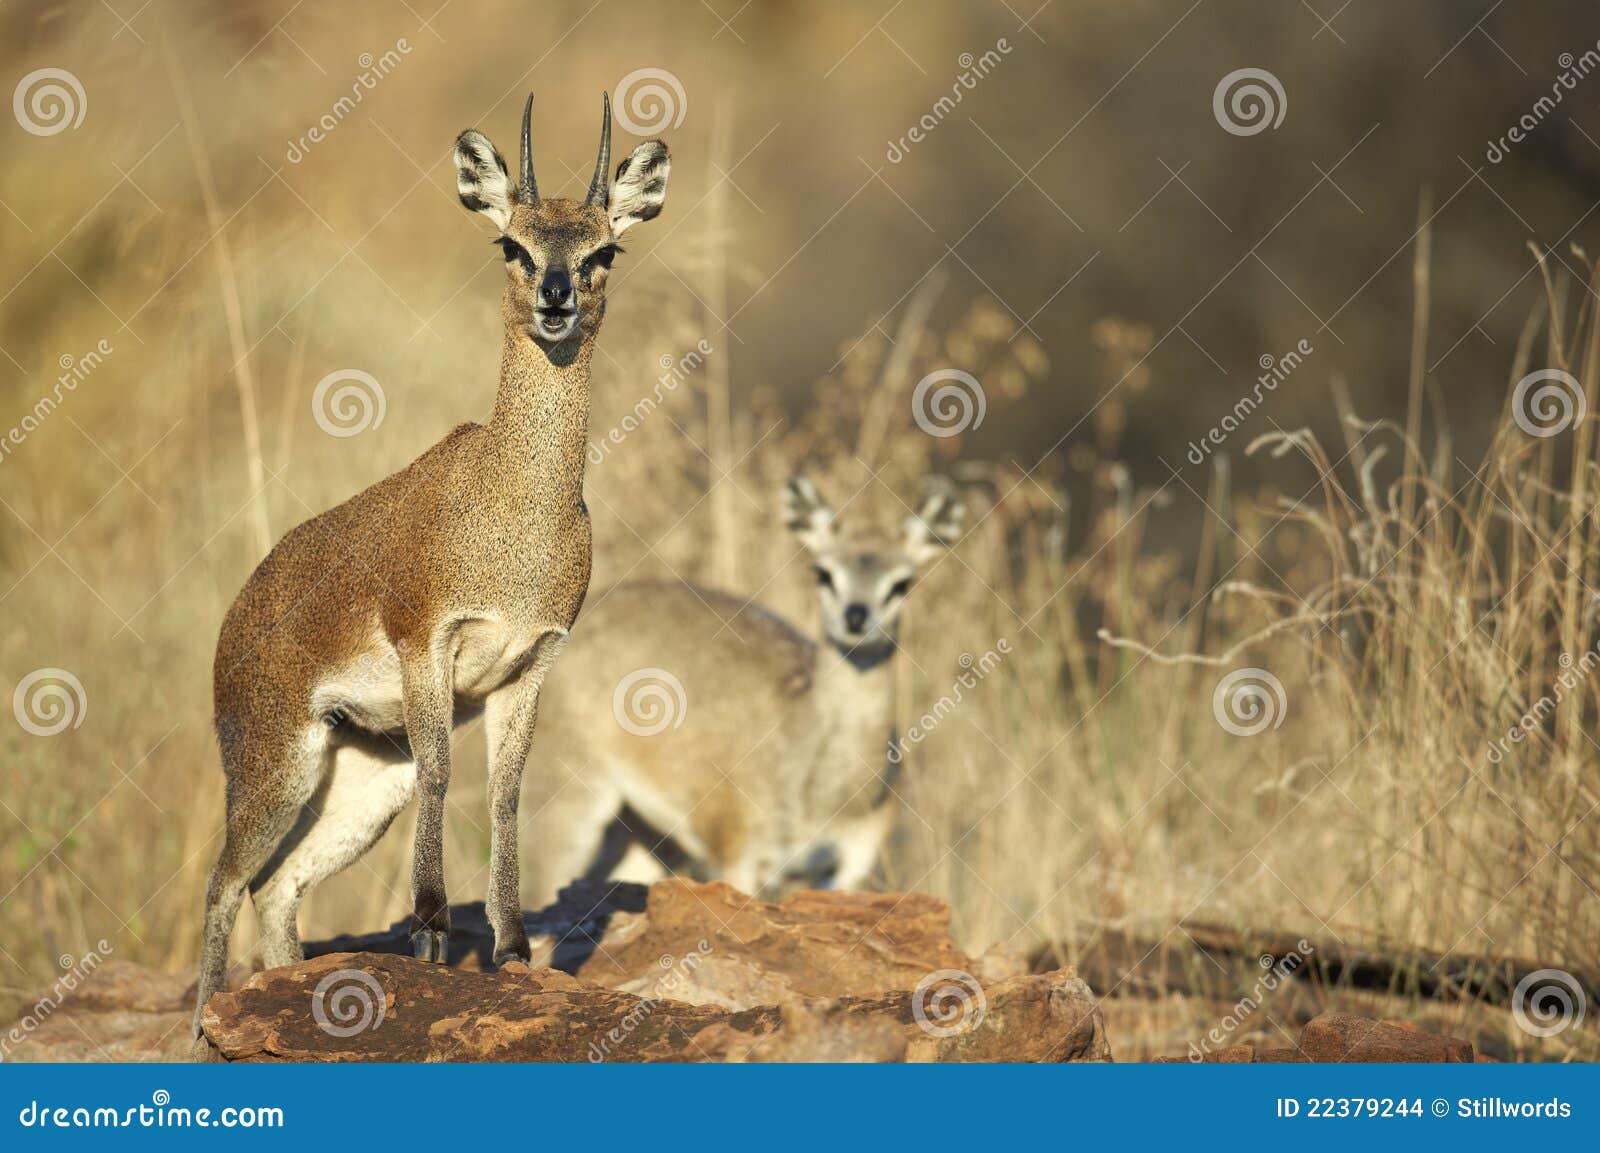 male and female steenbok